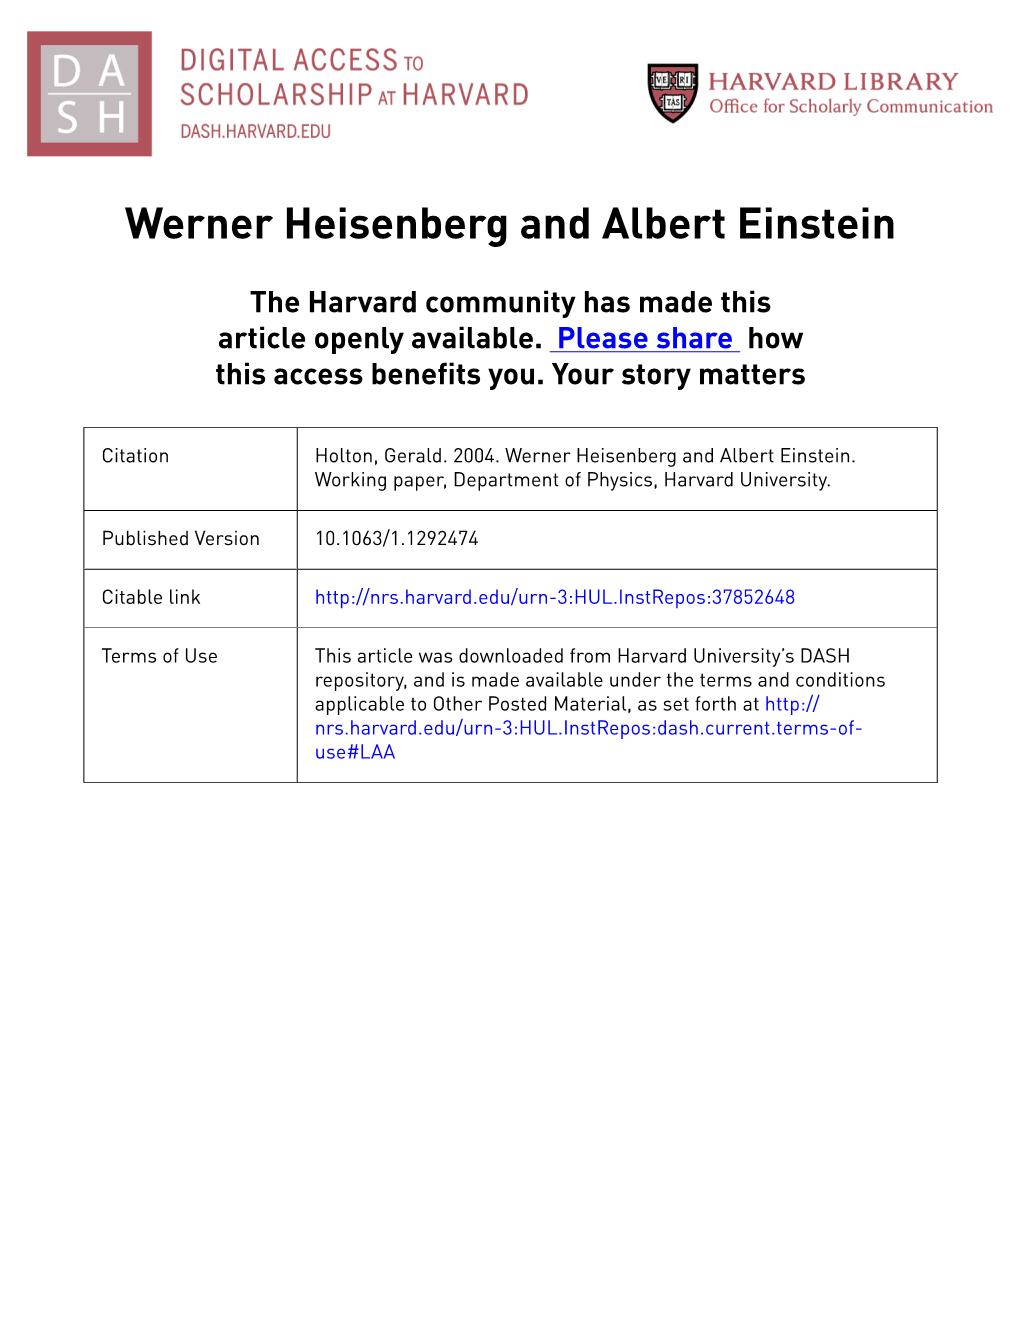 Werner Heisenberg and Albert Einstein